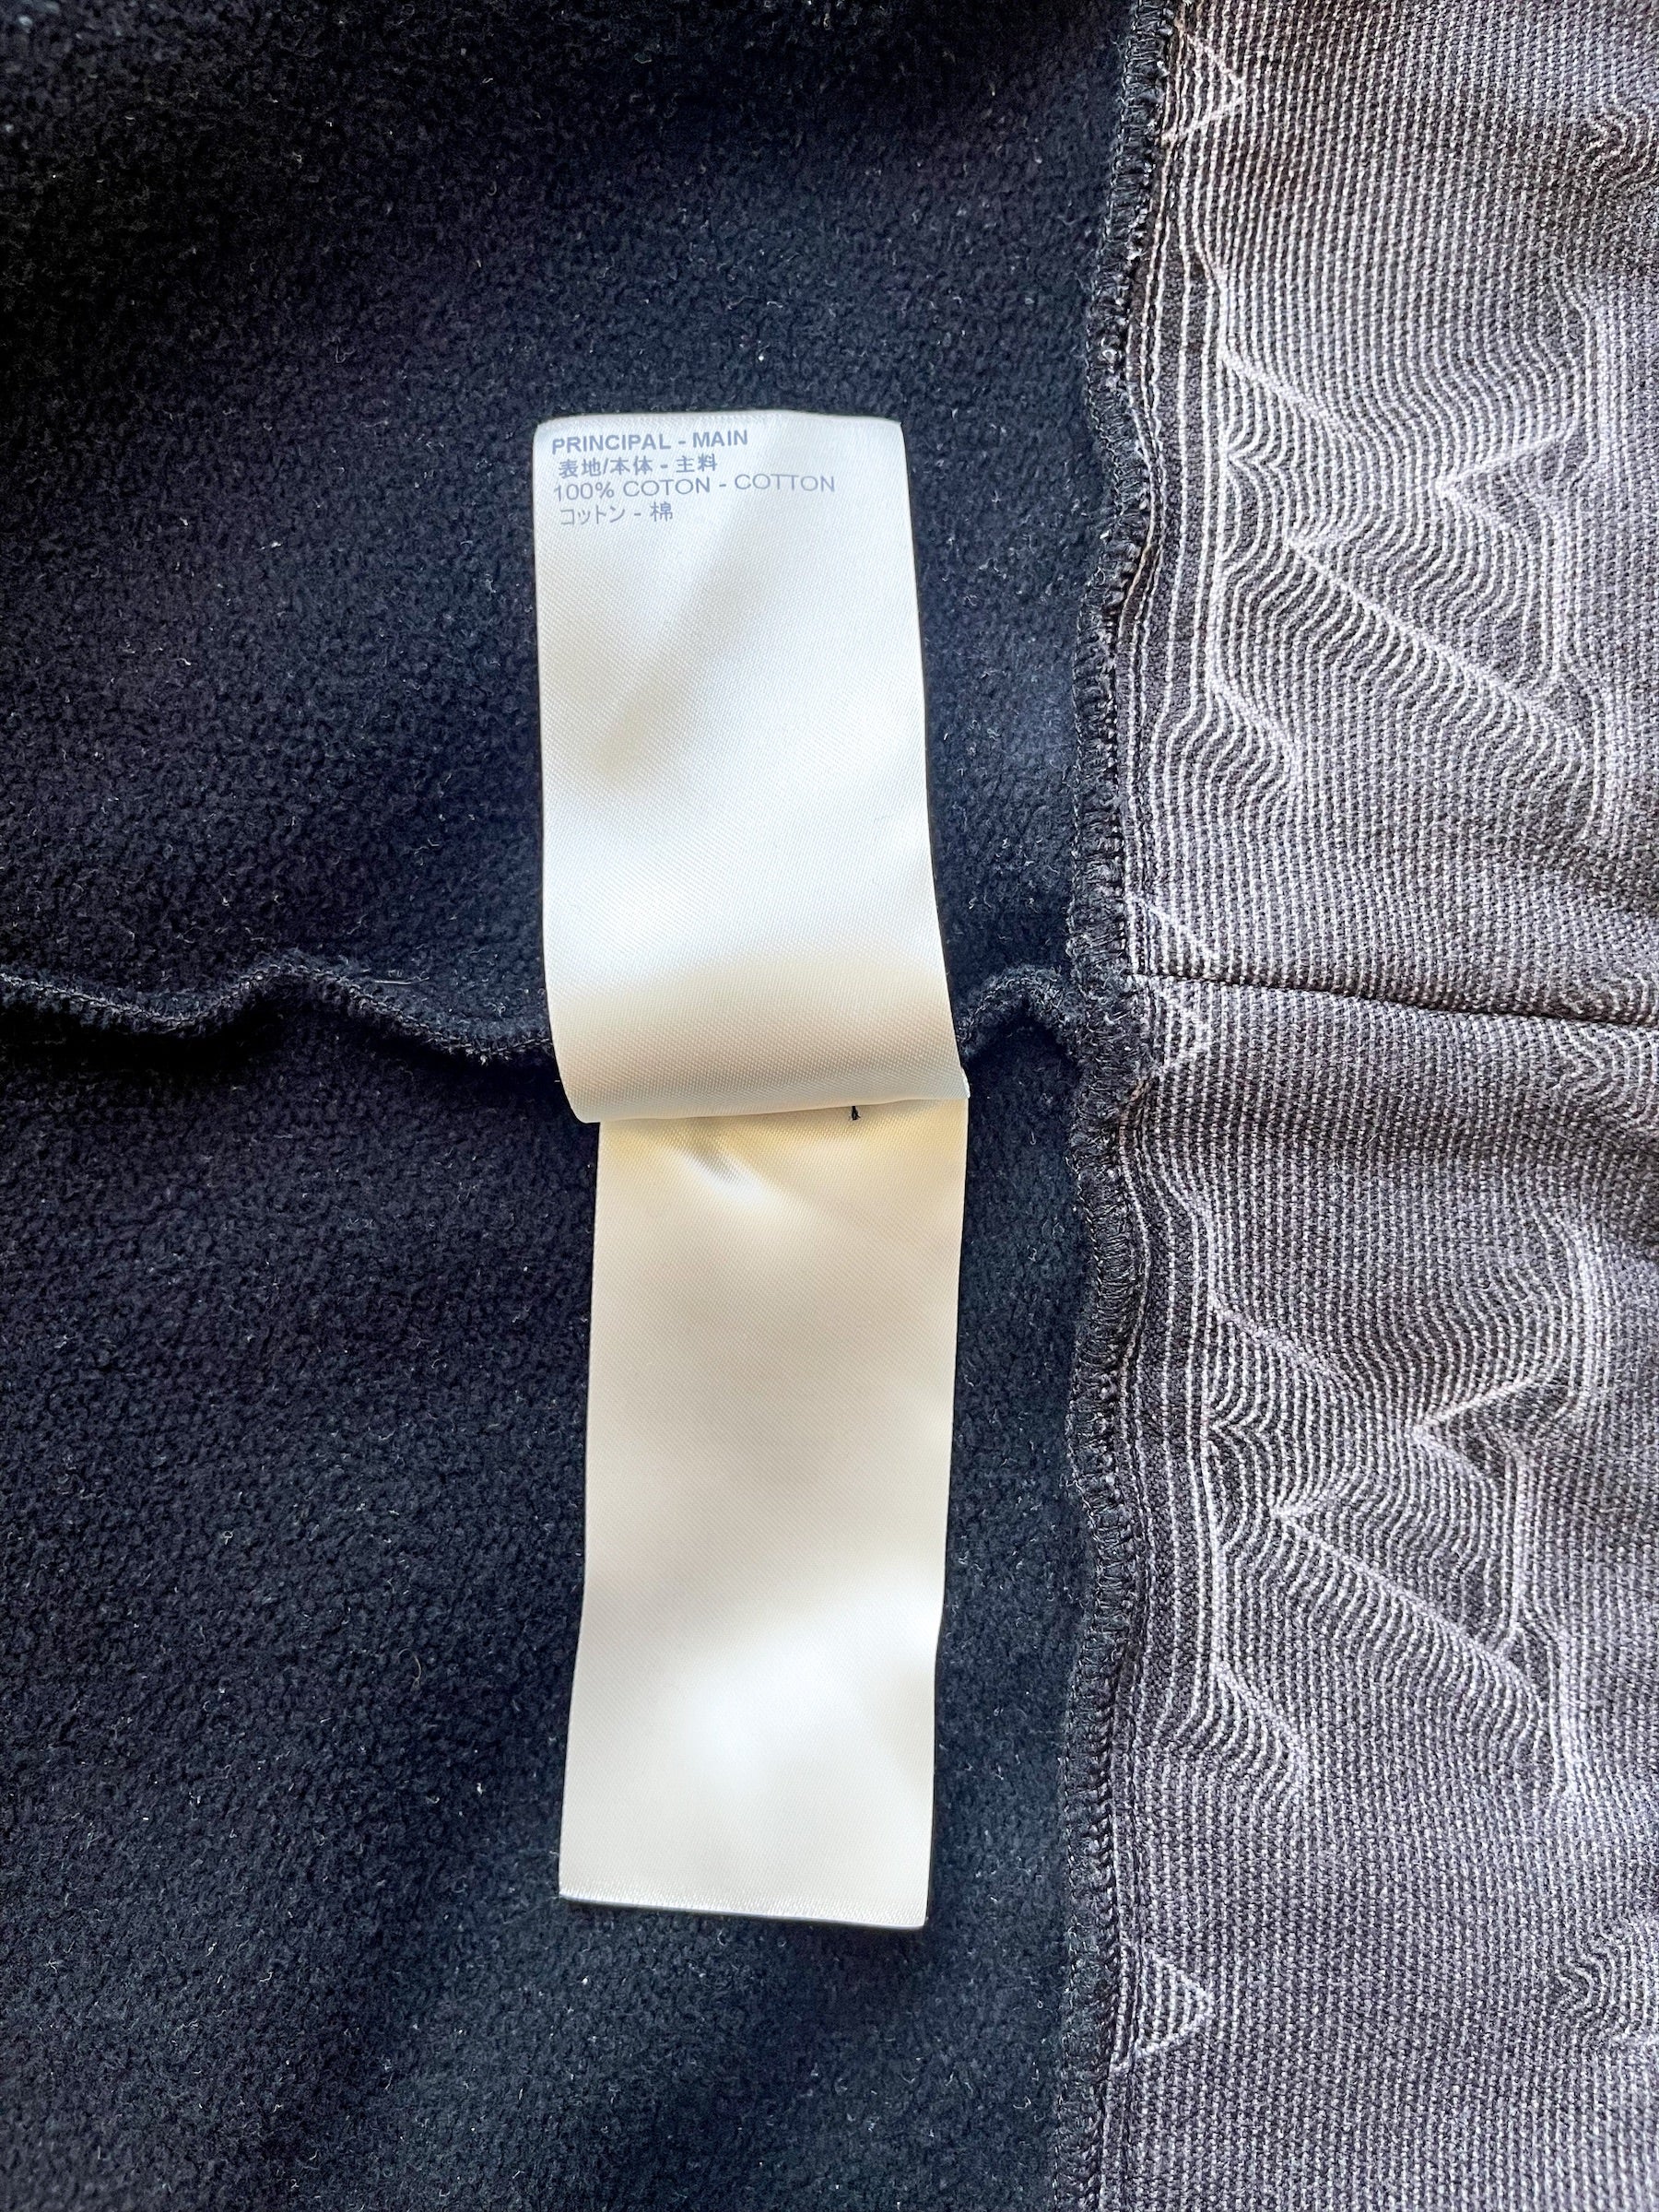 Louis Vuitton 2021 2054 Hoodie - Black Sweatshirts & Hoodies, Clothing -  LOU496516